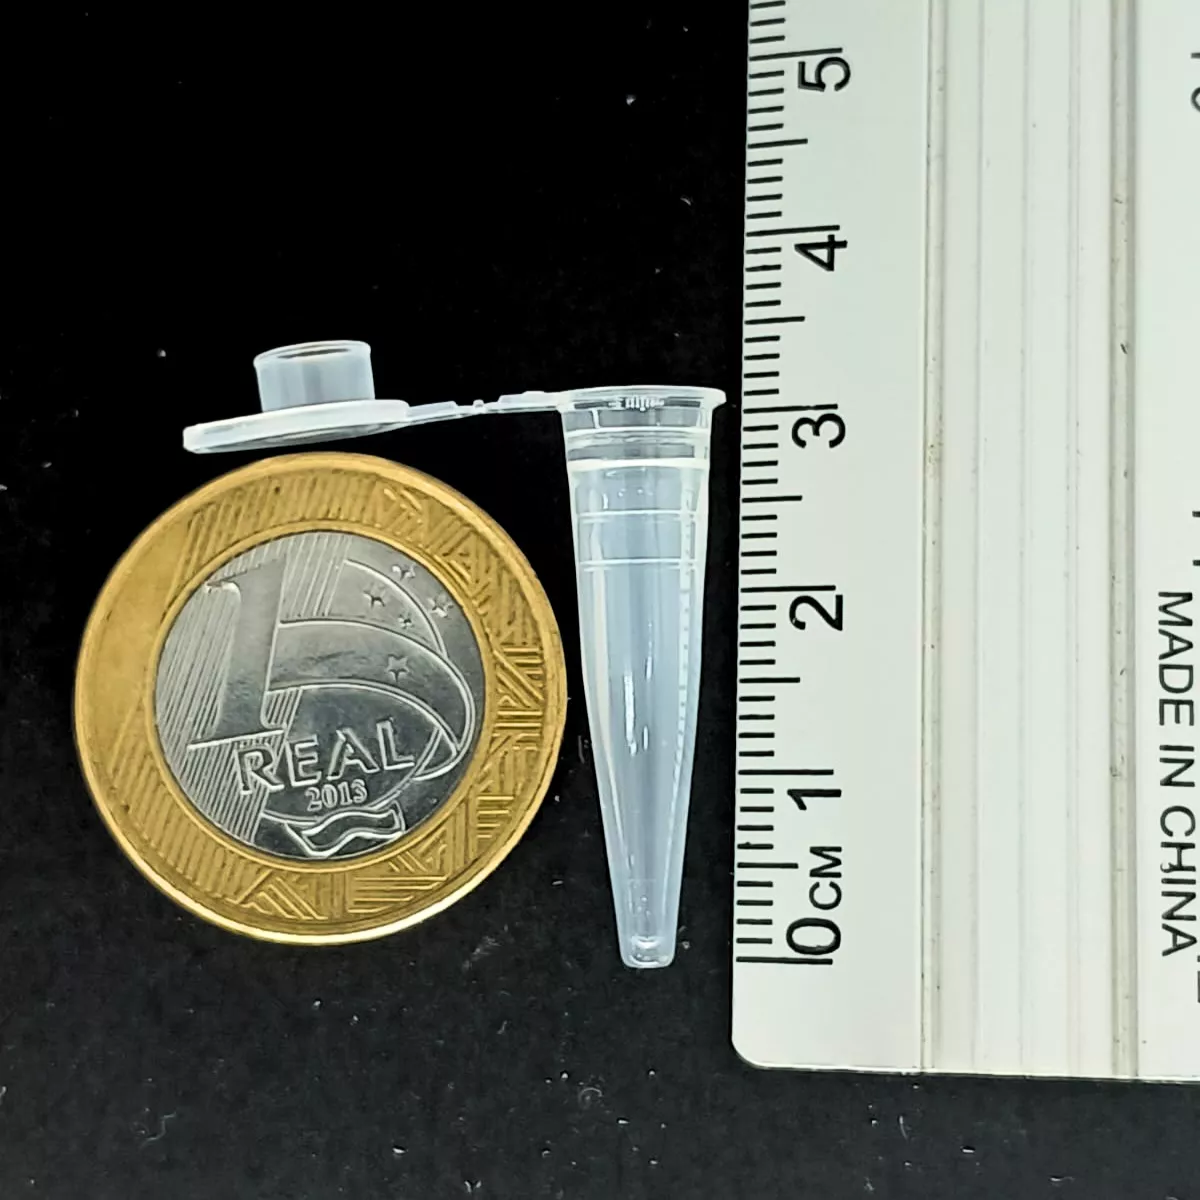 Primeira imagem para pesquisa de capsulas tipo pino de 1 5 gramas